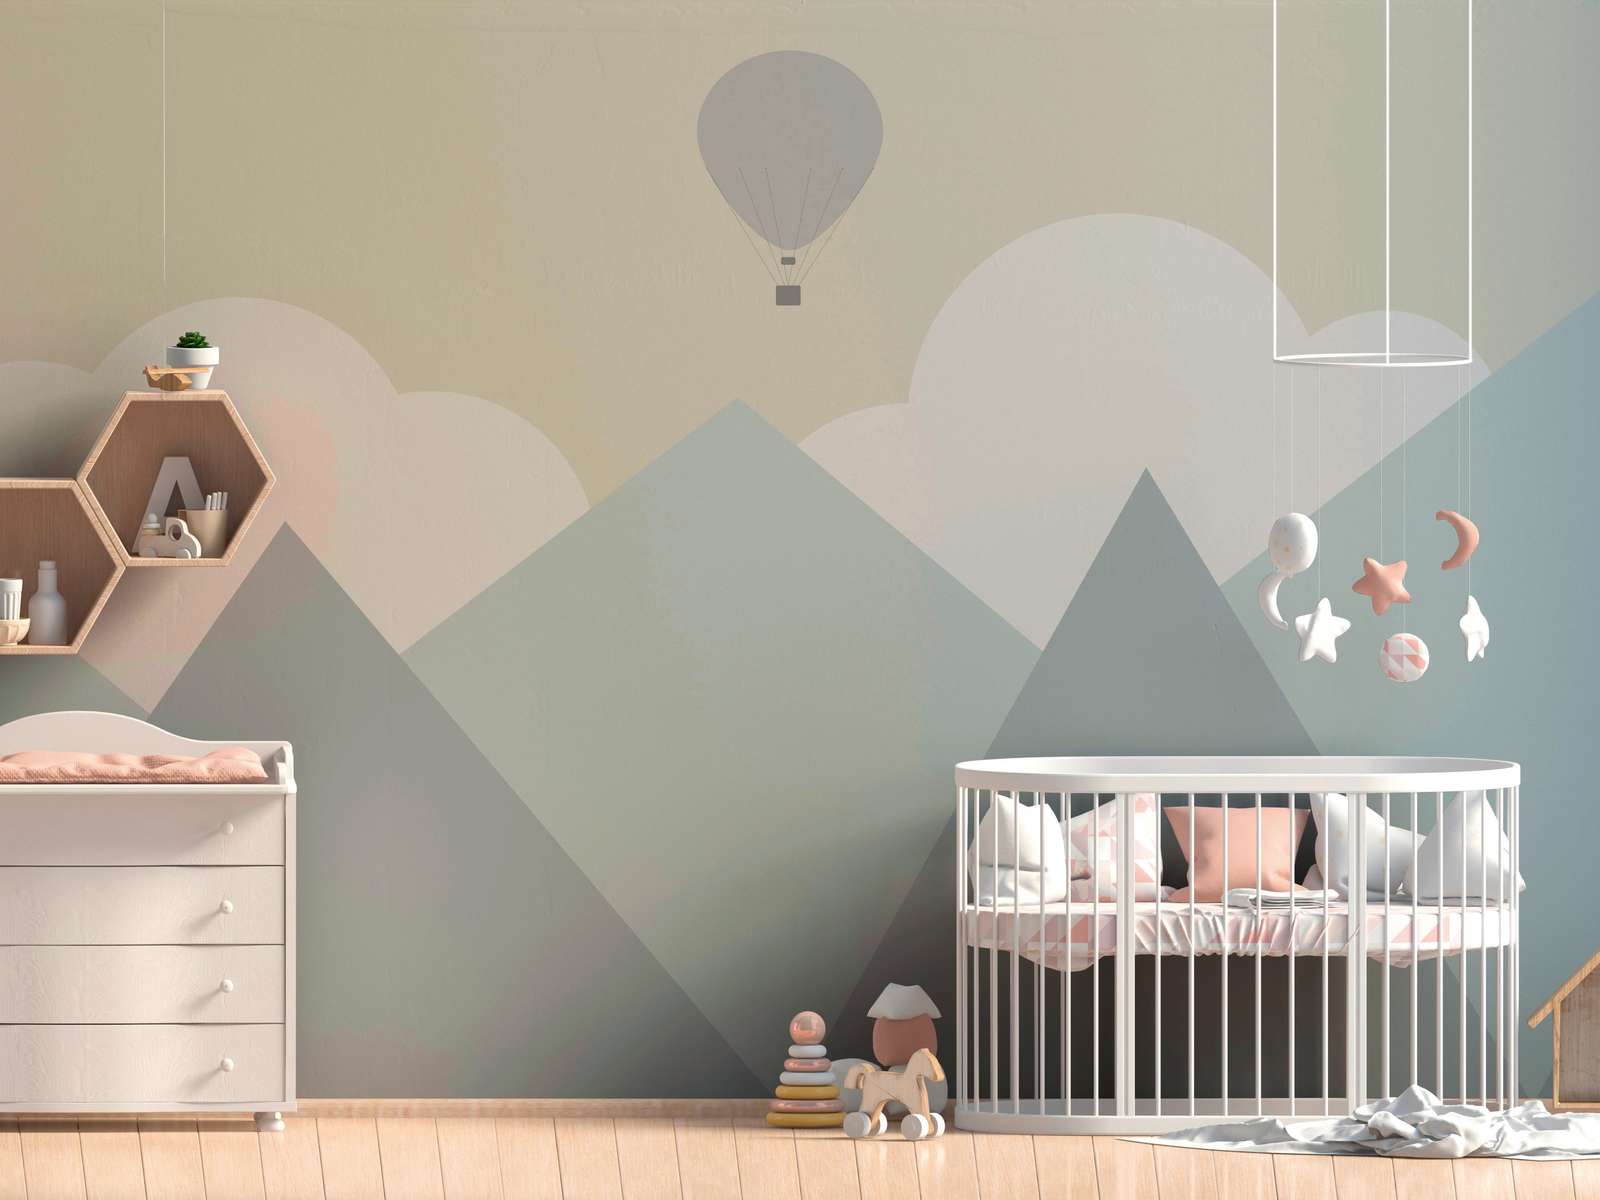             Kinderkamer Bergen met Wolken en Luchtballon Onderlaag behang - Geel, Groen, Grijs
        